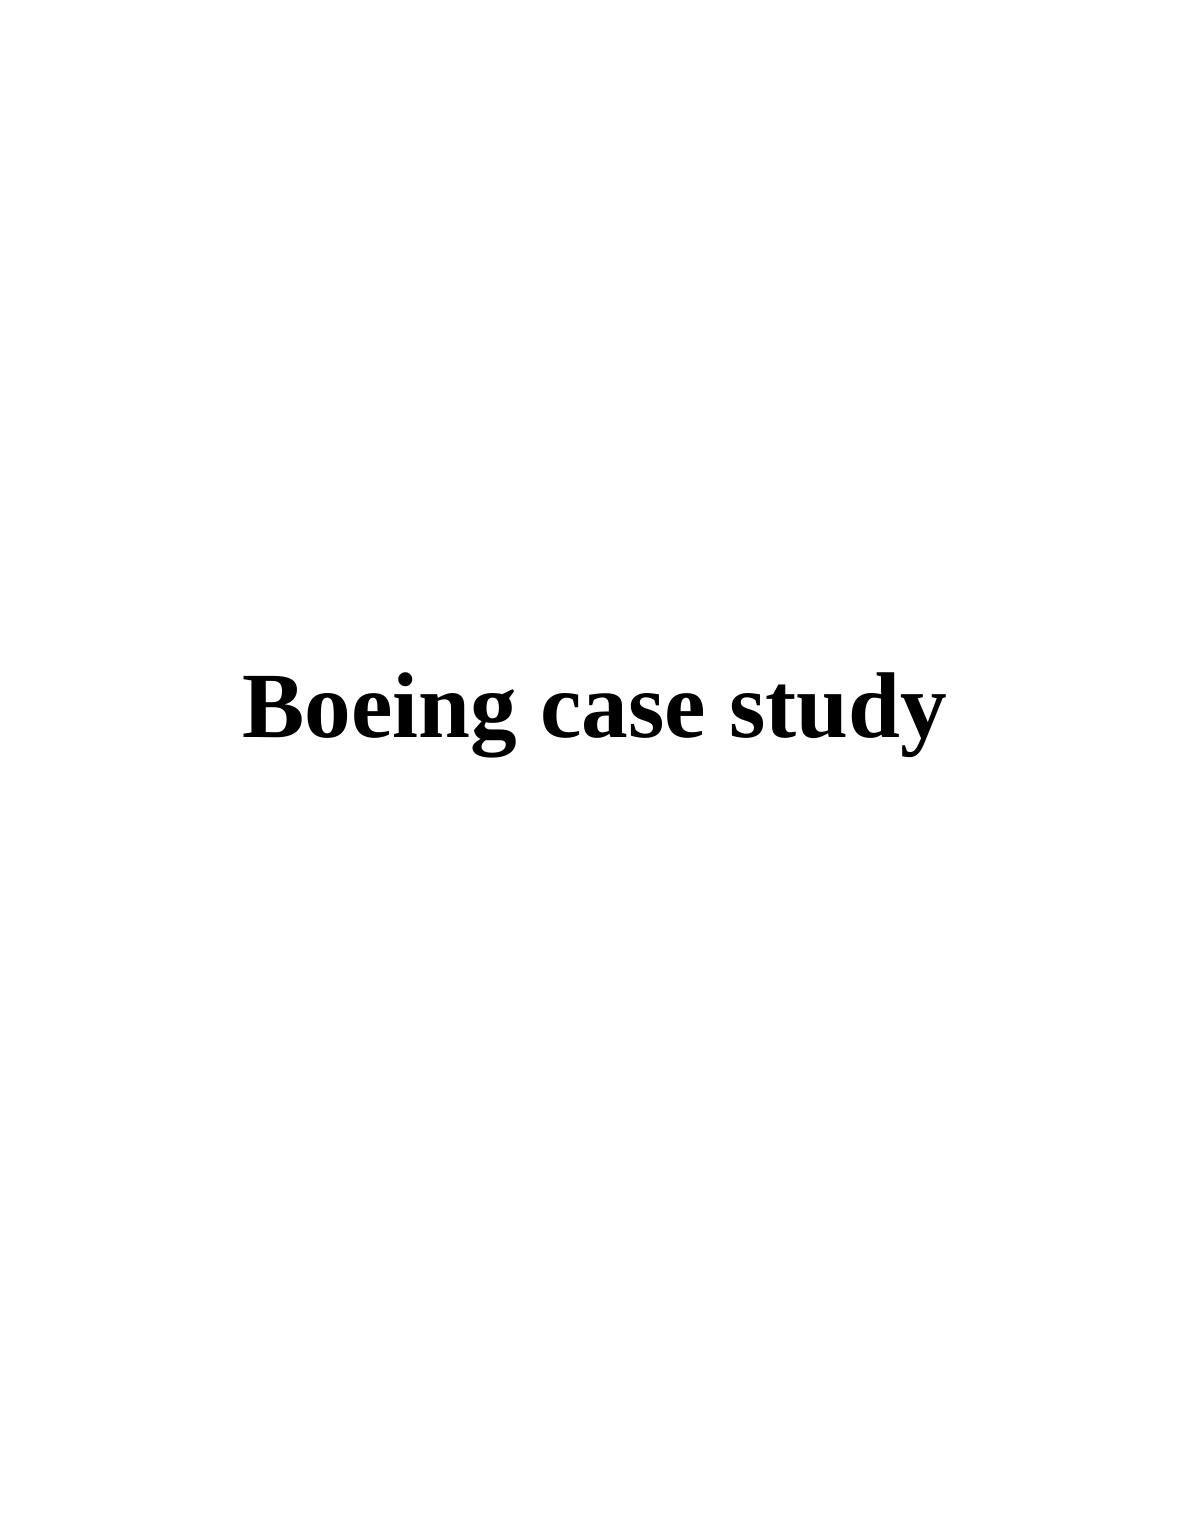 Boeing Case Study_1